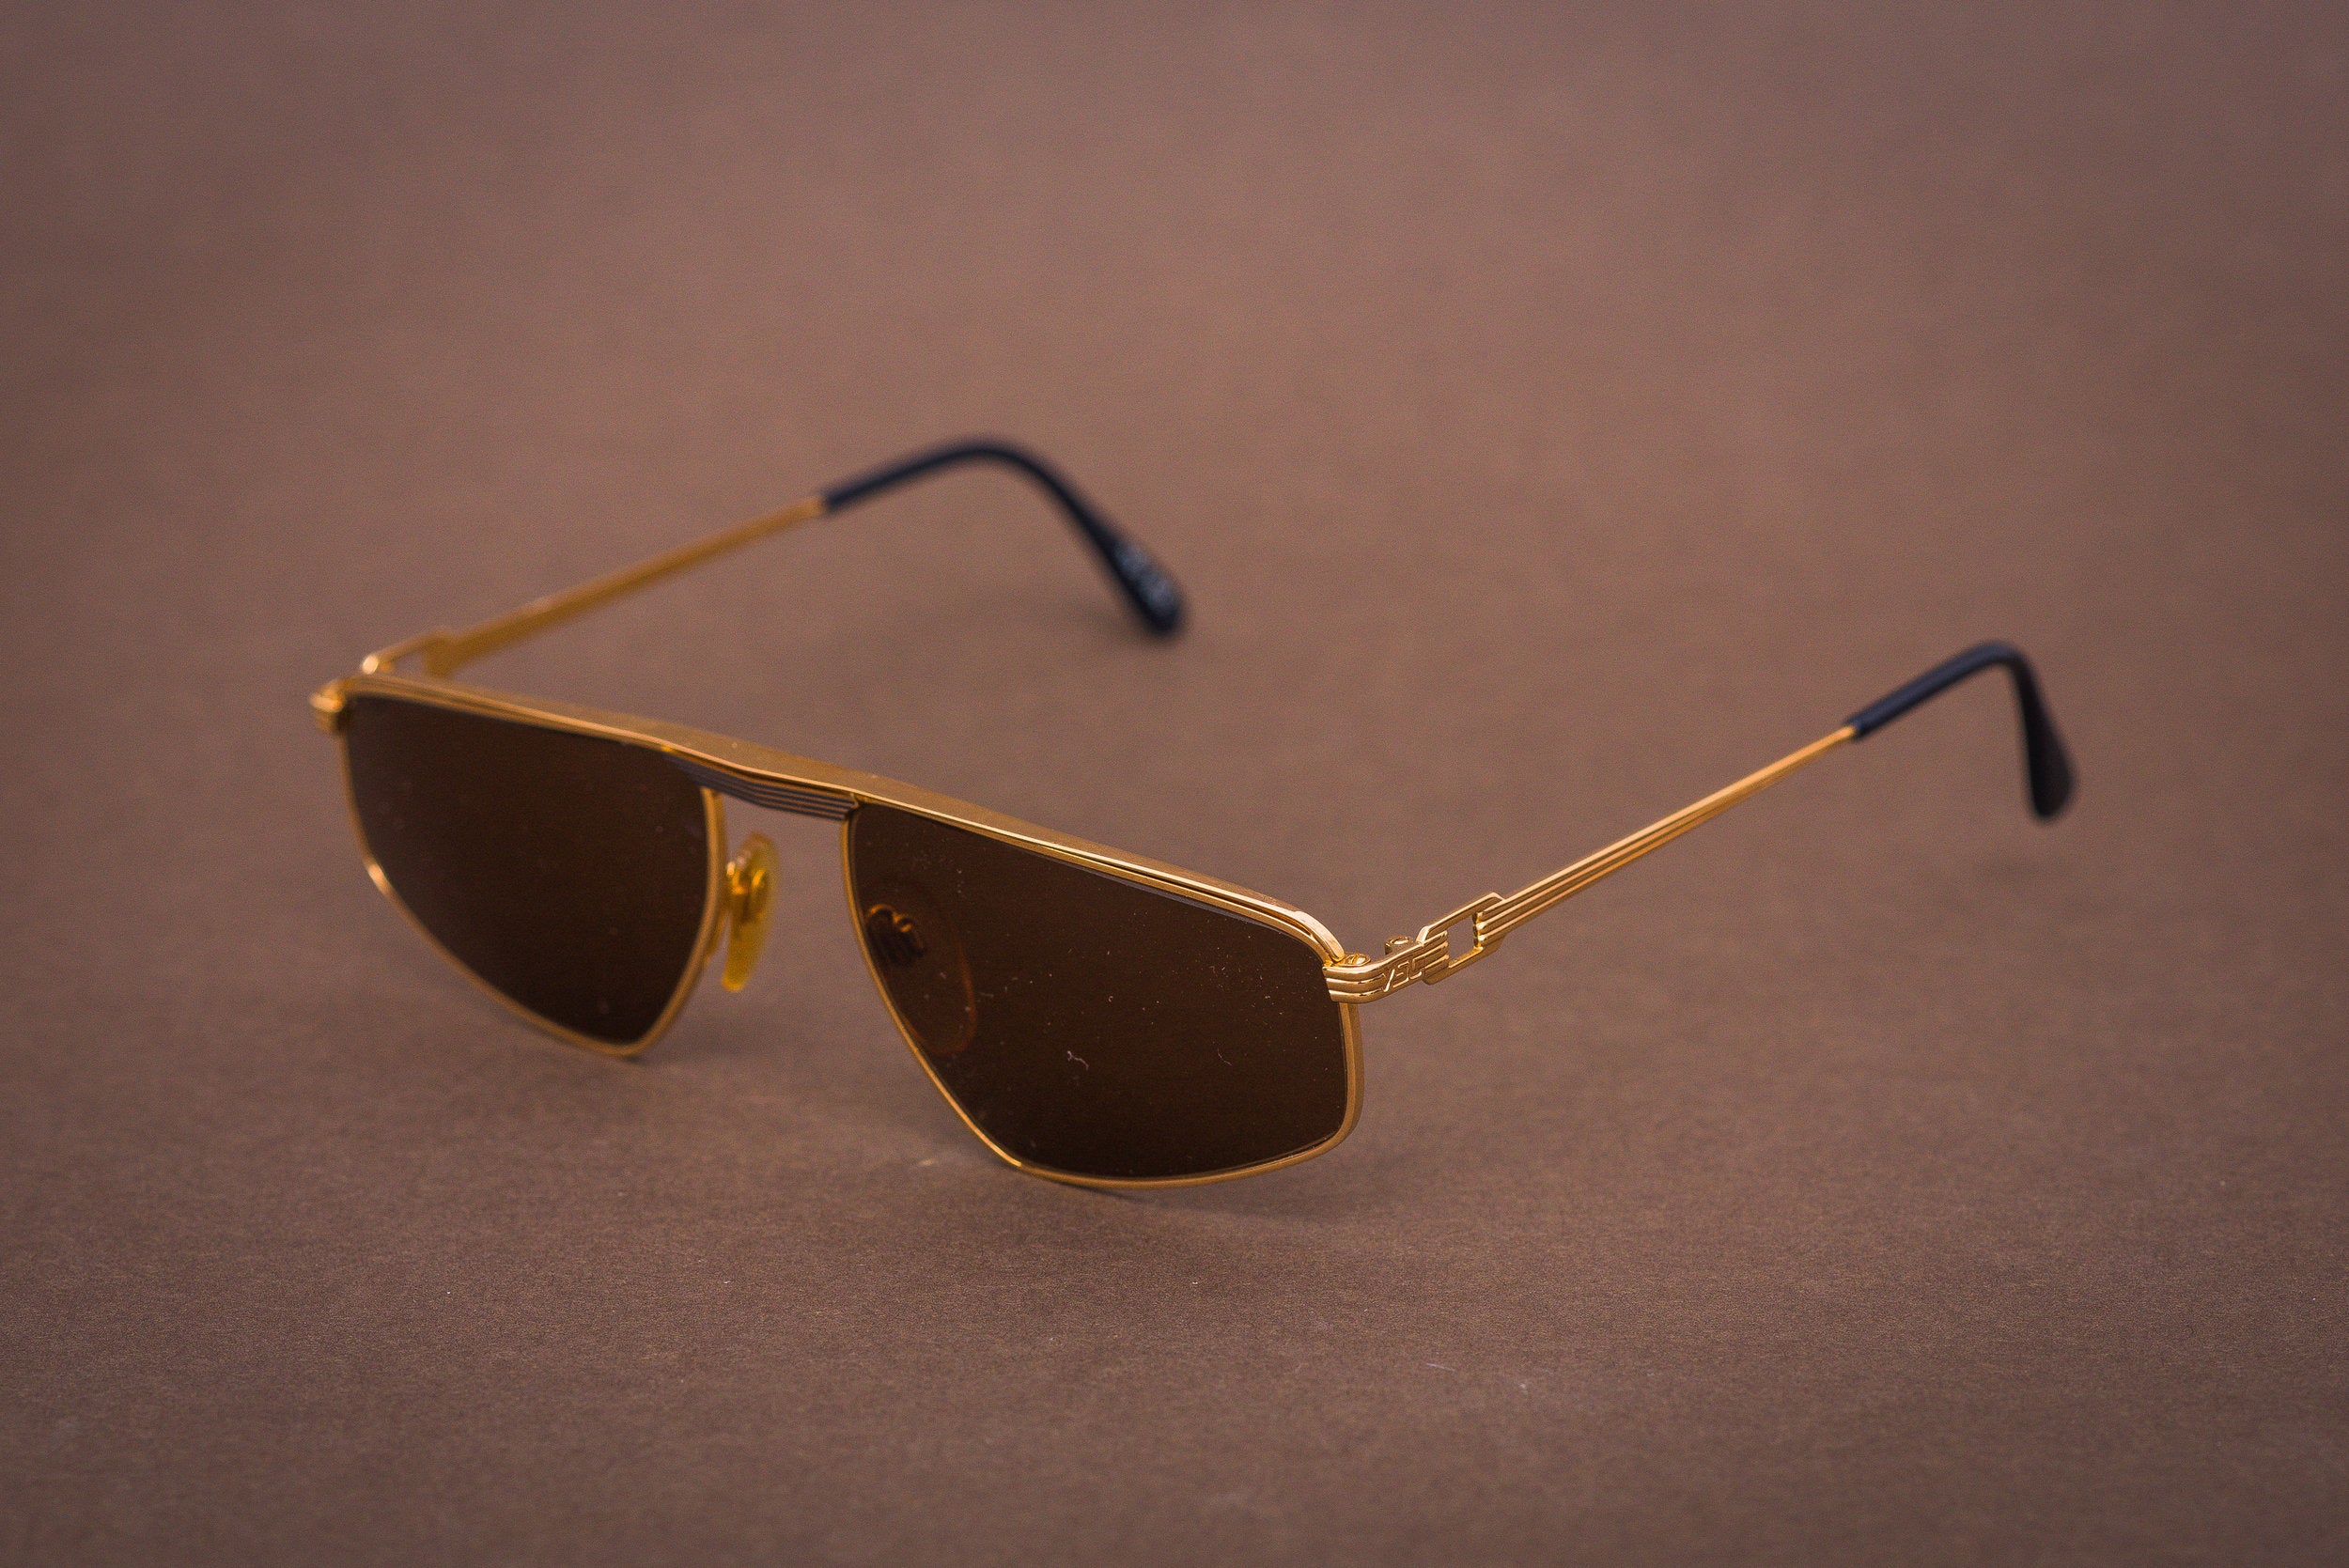 Yves Saint Laurent Asterius sunglasses